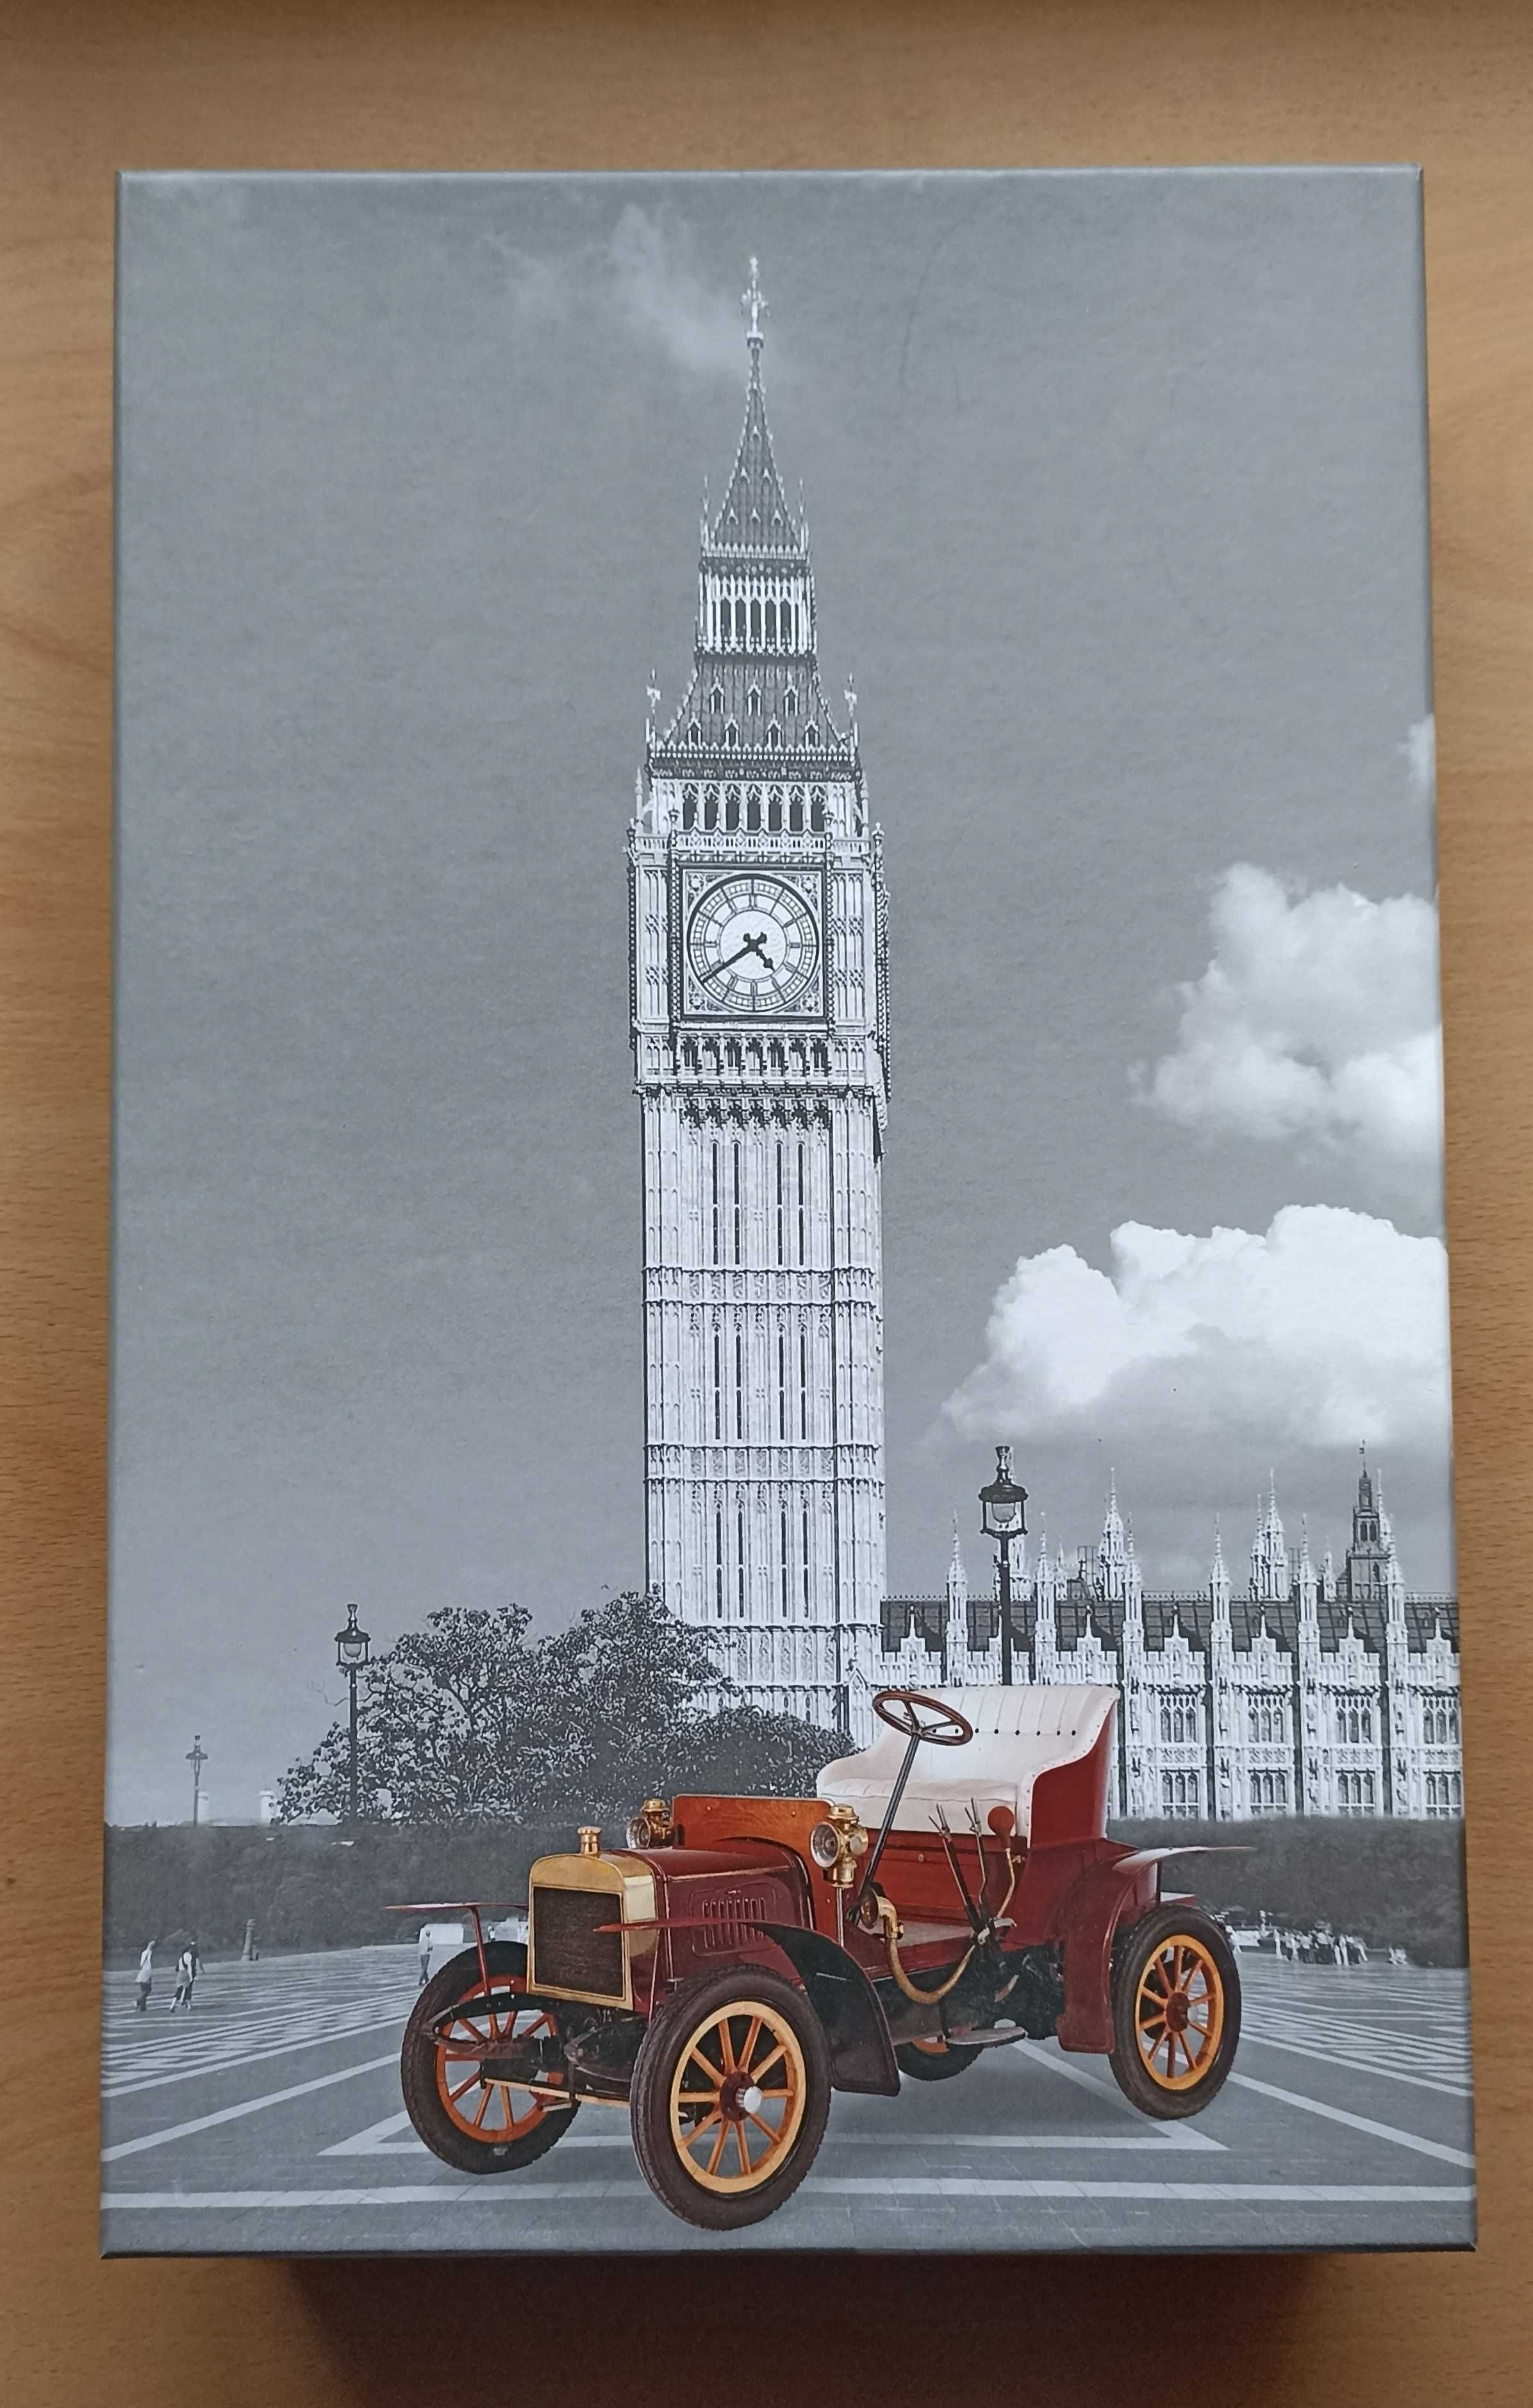 Caixa com 9 divisórias removíveis  e imagem do Big Ben -Londres.